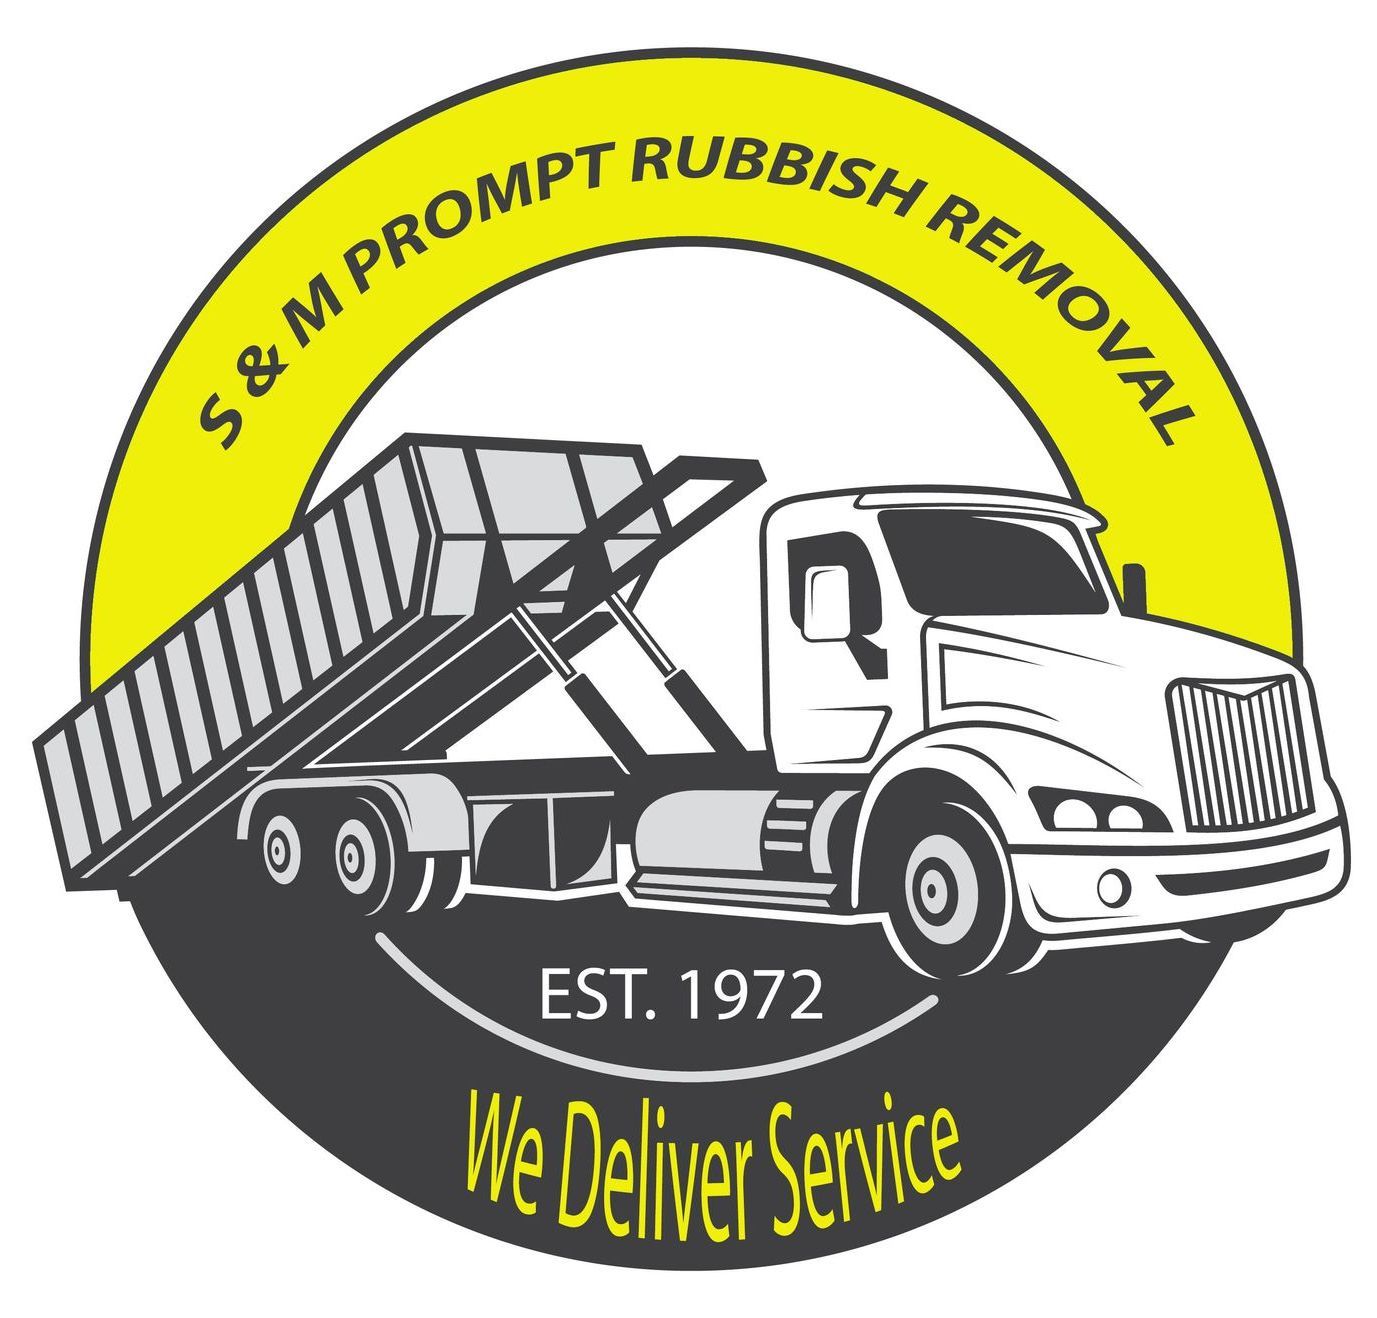 S & M Prompt Rubbish Removal Service, Inc. - Logo